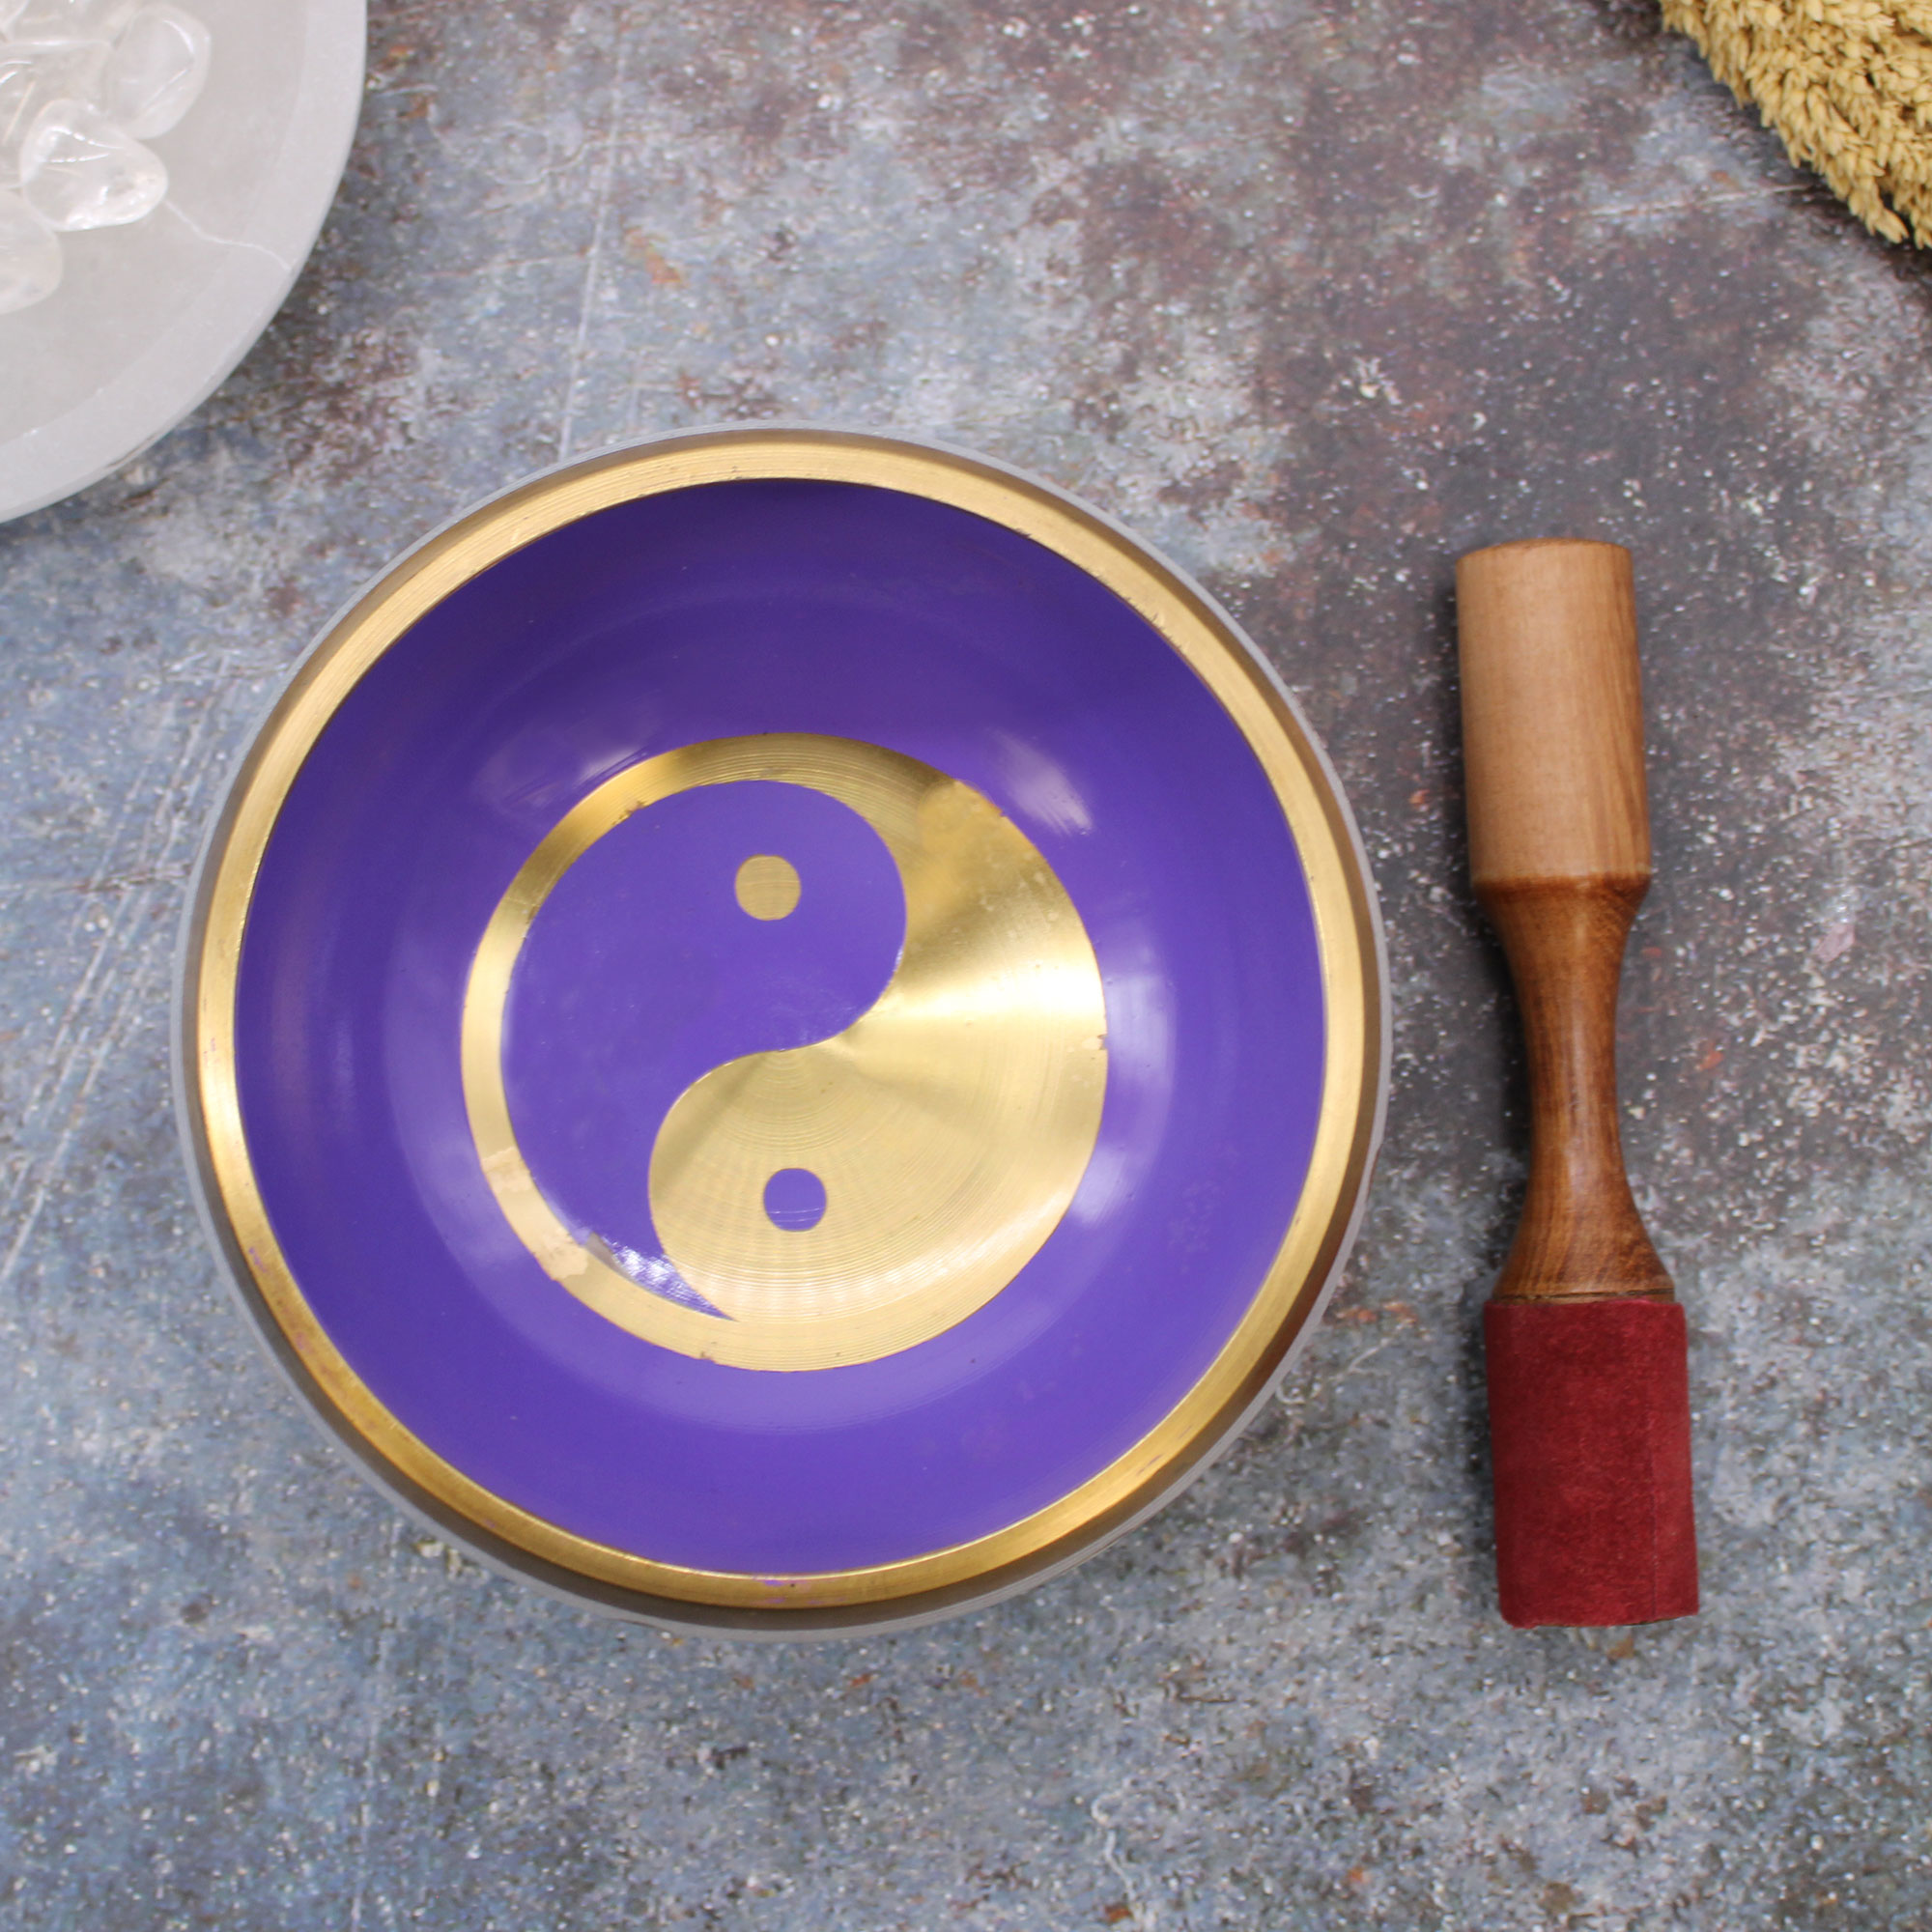 Lrg Yin & Yang Singing Bowl Set- White/Purple 14cm